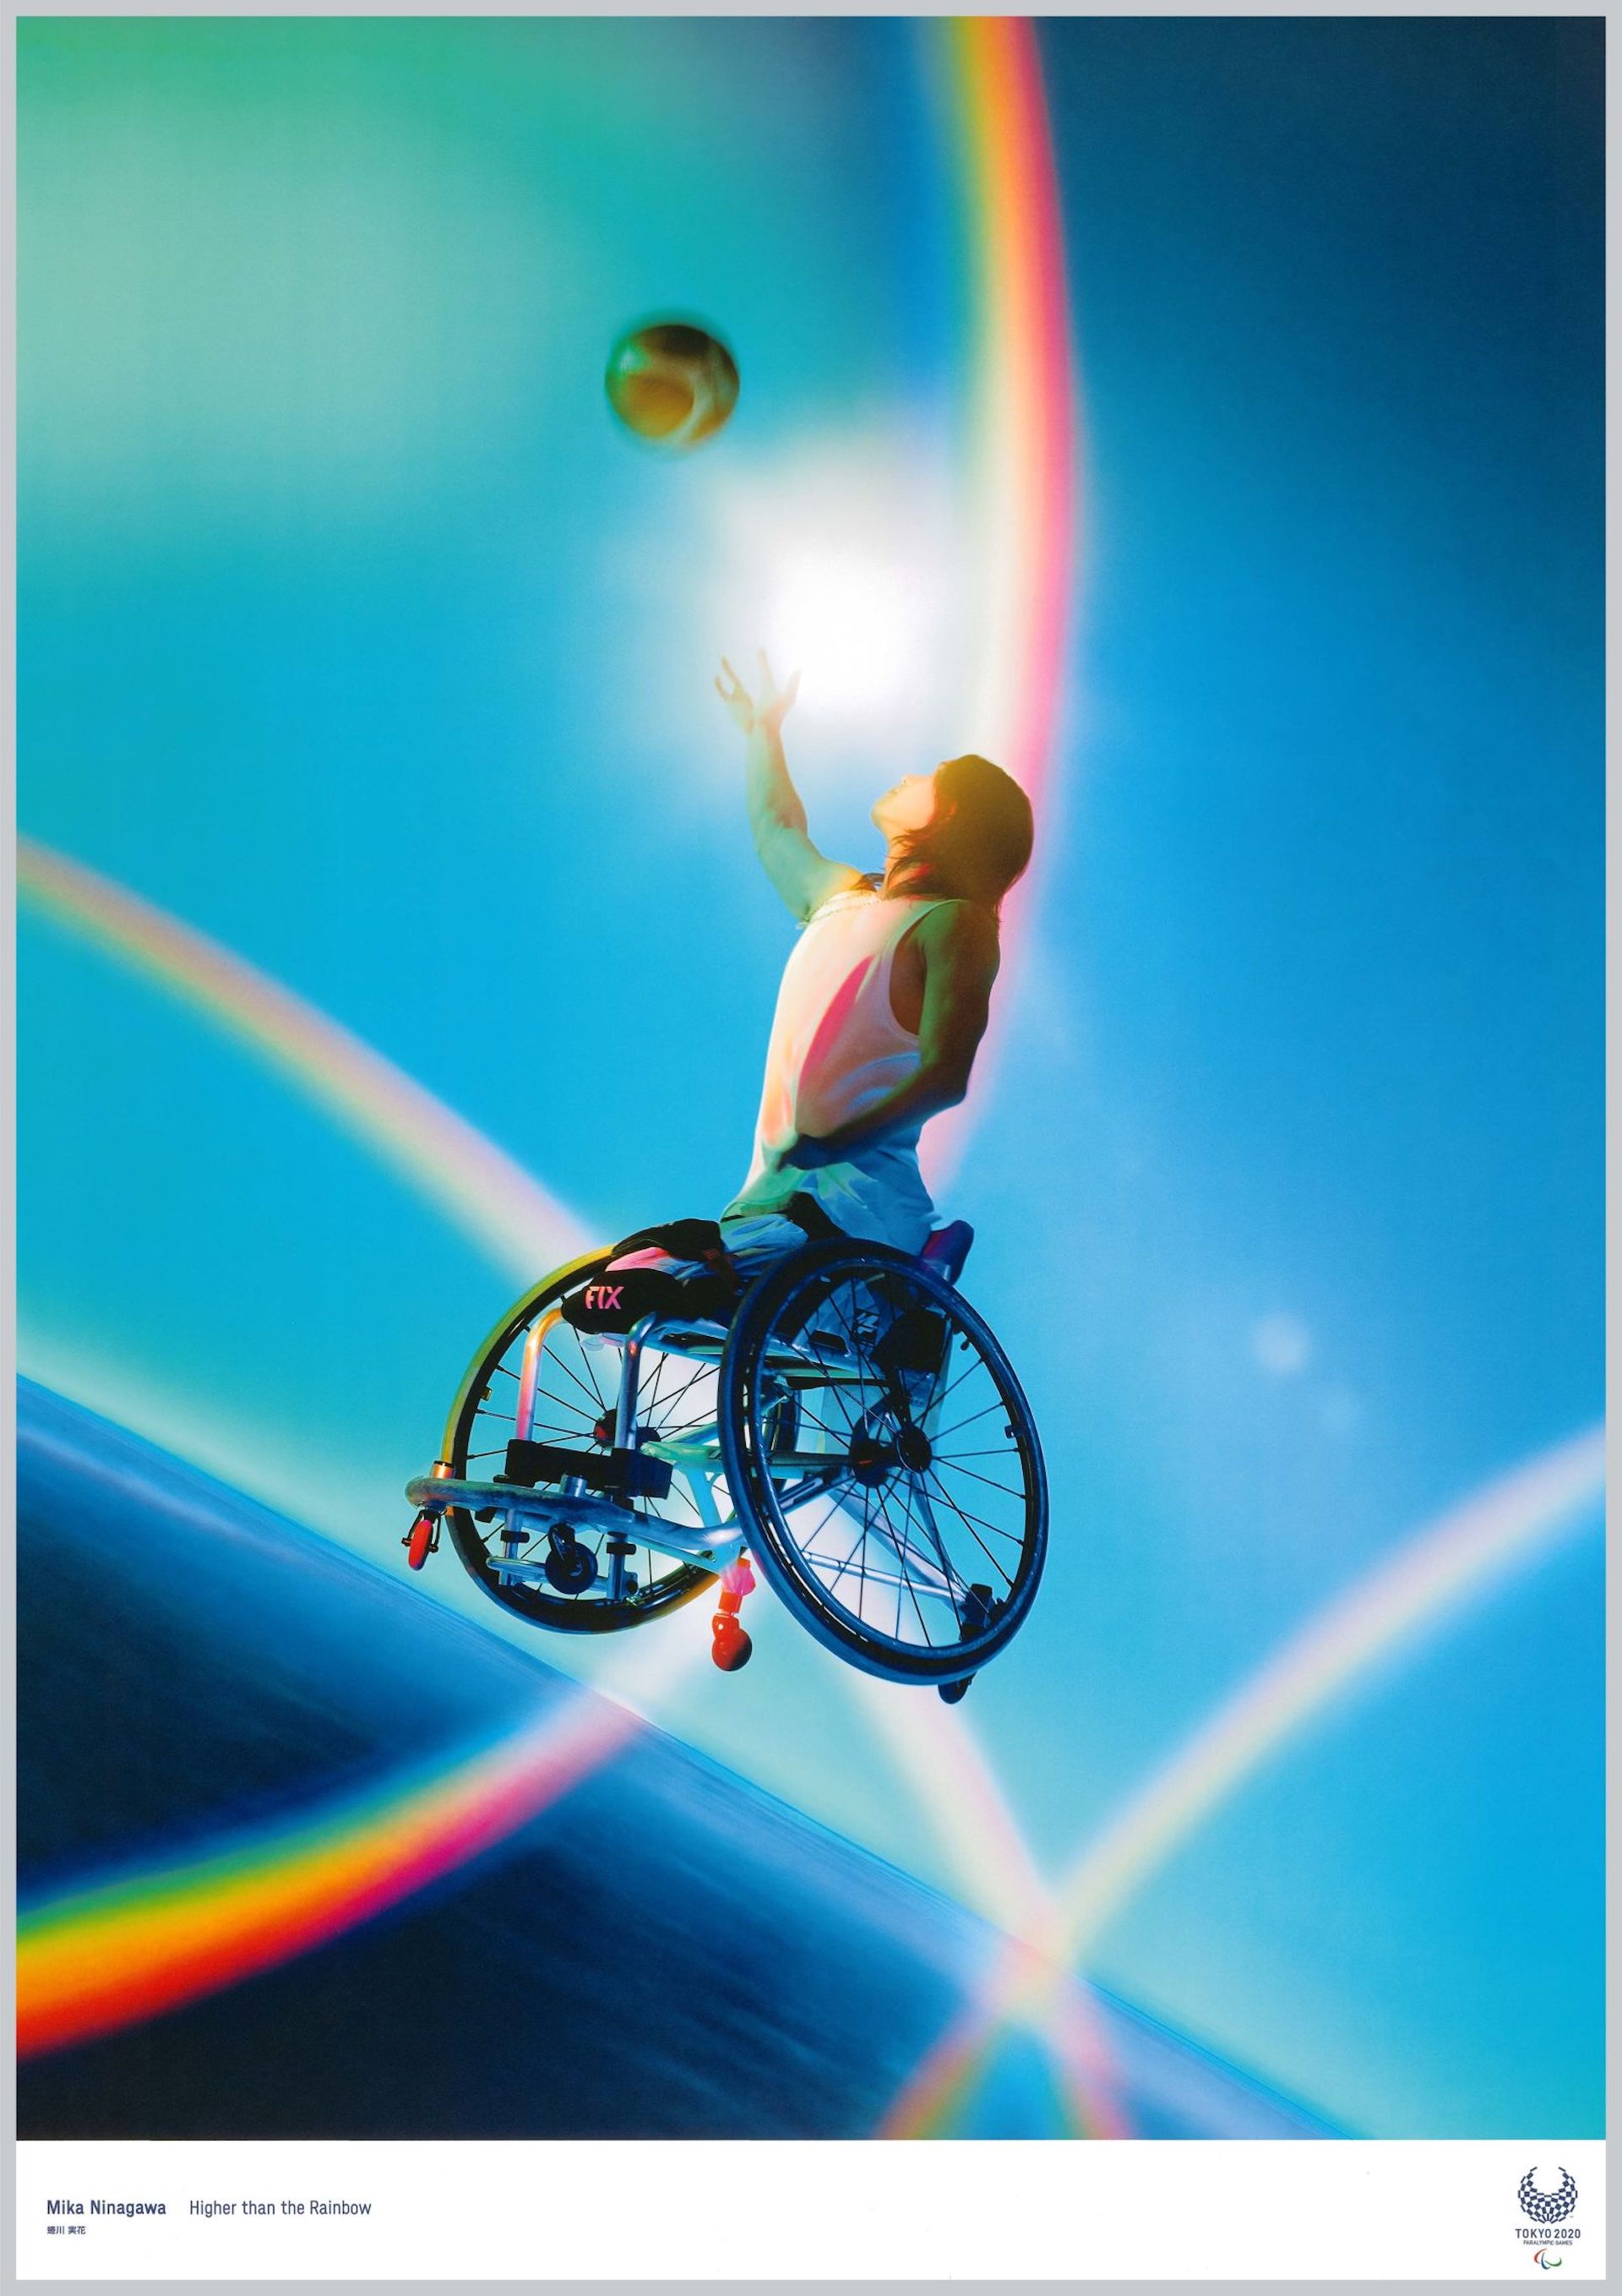 Estos son los posters de los Juegos Olímpicos Tokio 2020 — Conocedores.com